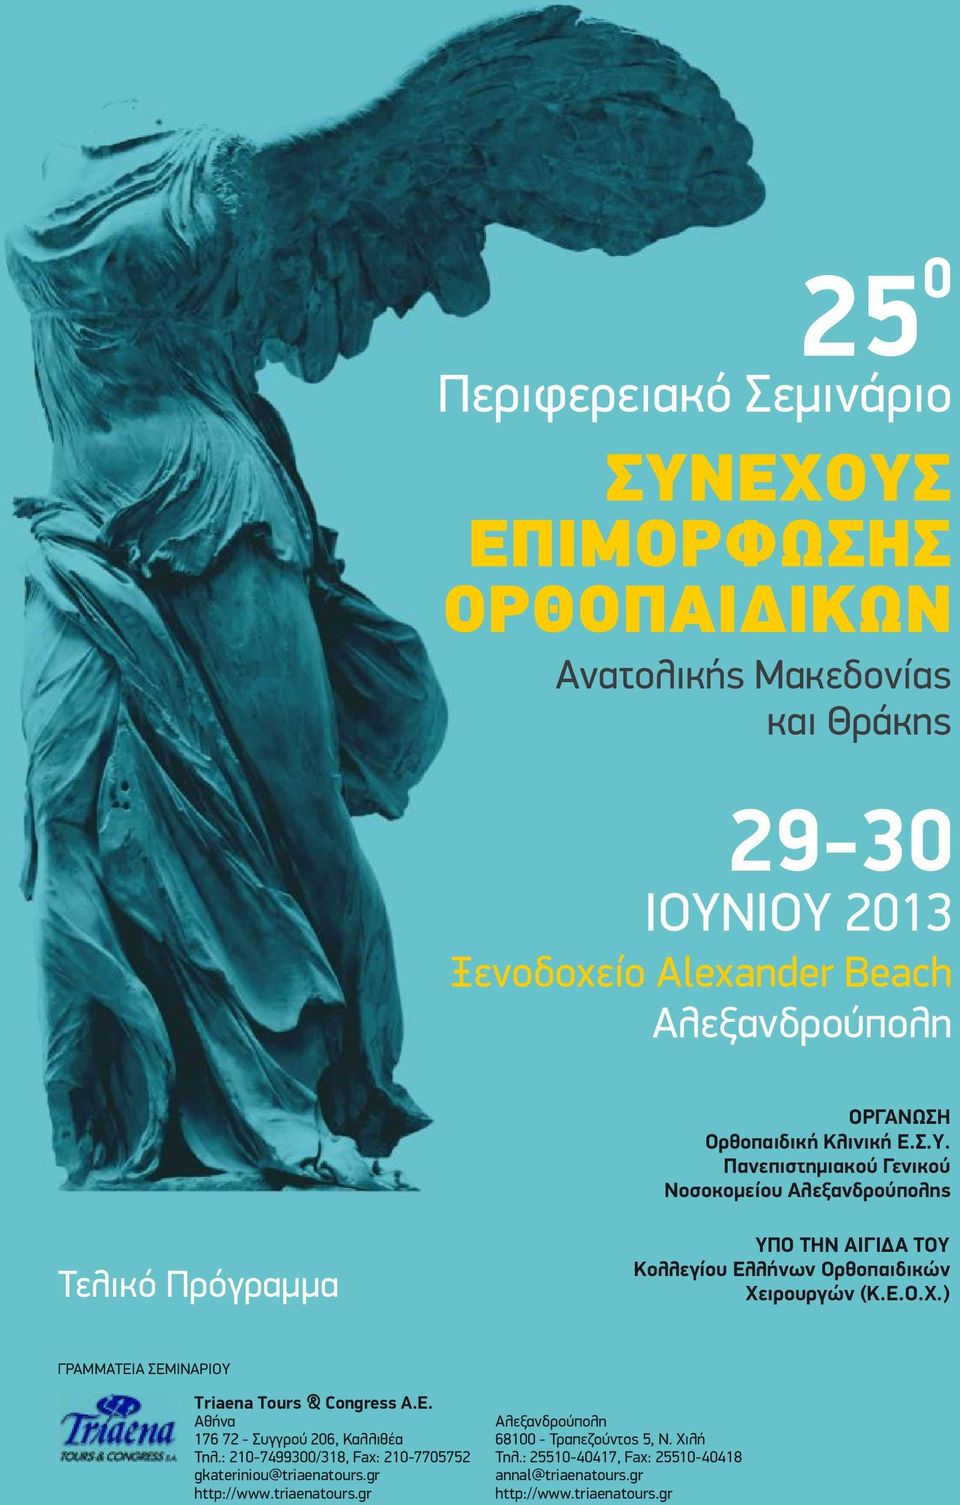 Πανεπιστημιακού Γενικού Νοσοκομείου Αλεξανδρούπολης Τελικό Πρόγραμμα ΥΠΟ ΤΗΝ ΑΙΓΙΔΑ ΤΟΥ Κολλεγίου Ελλήνων Ορθοπαιδικών Χε